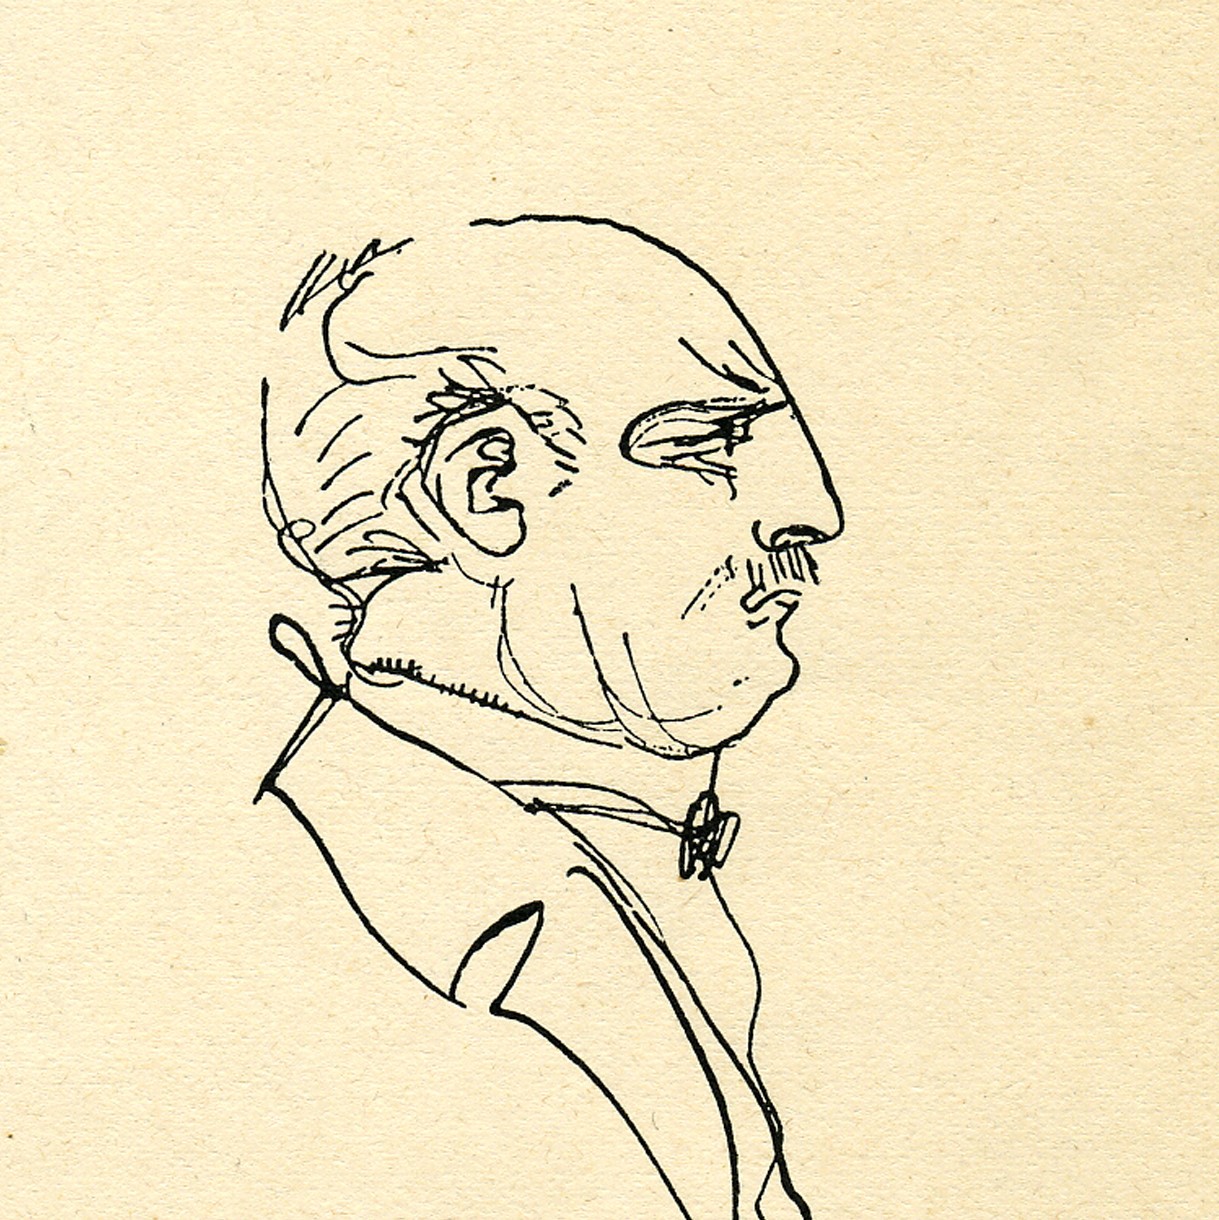 Heinrich Kley